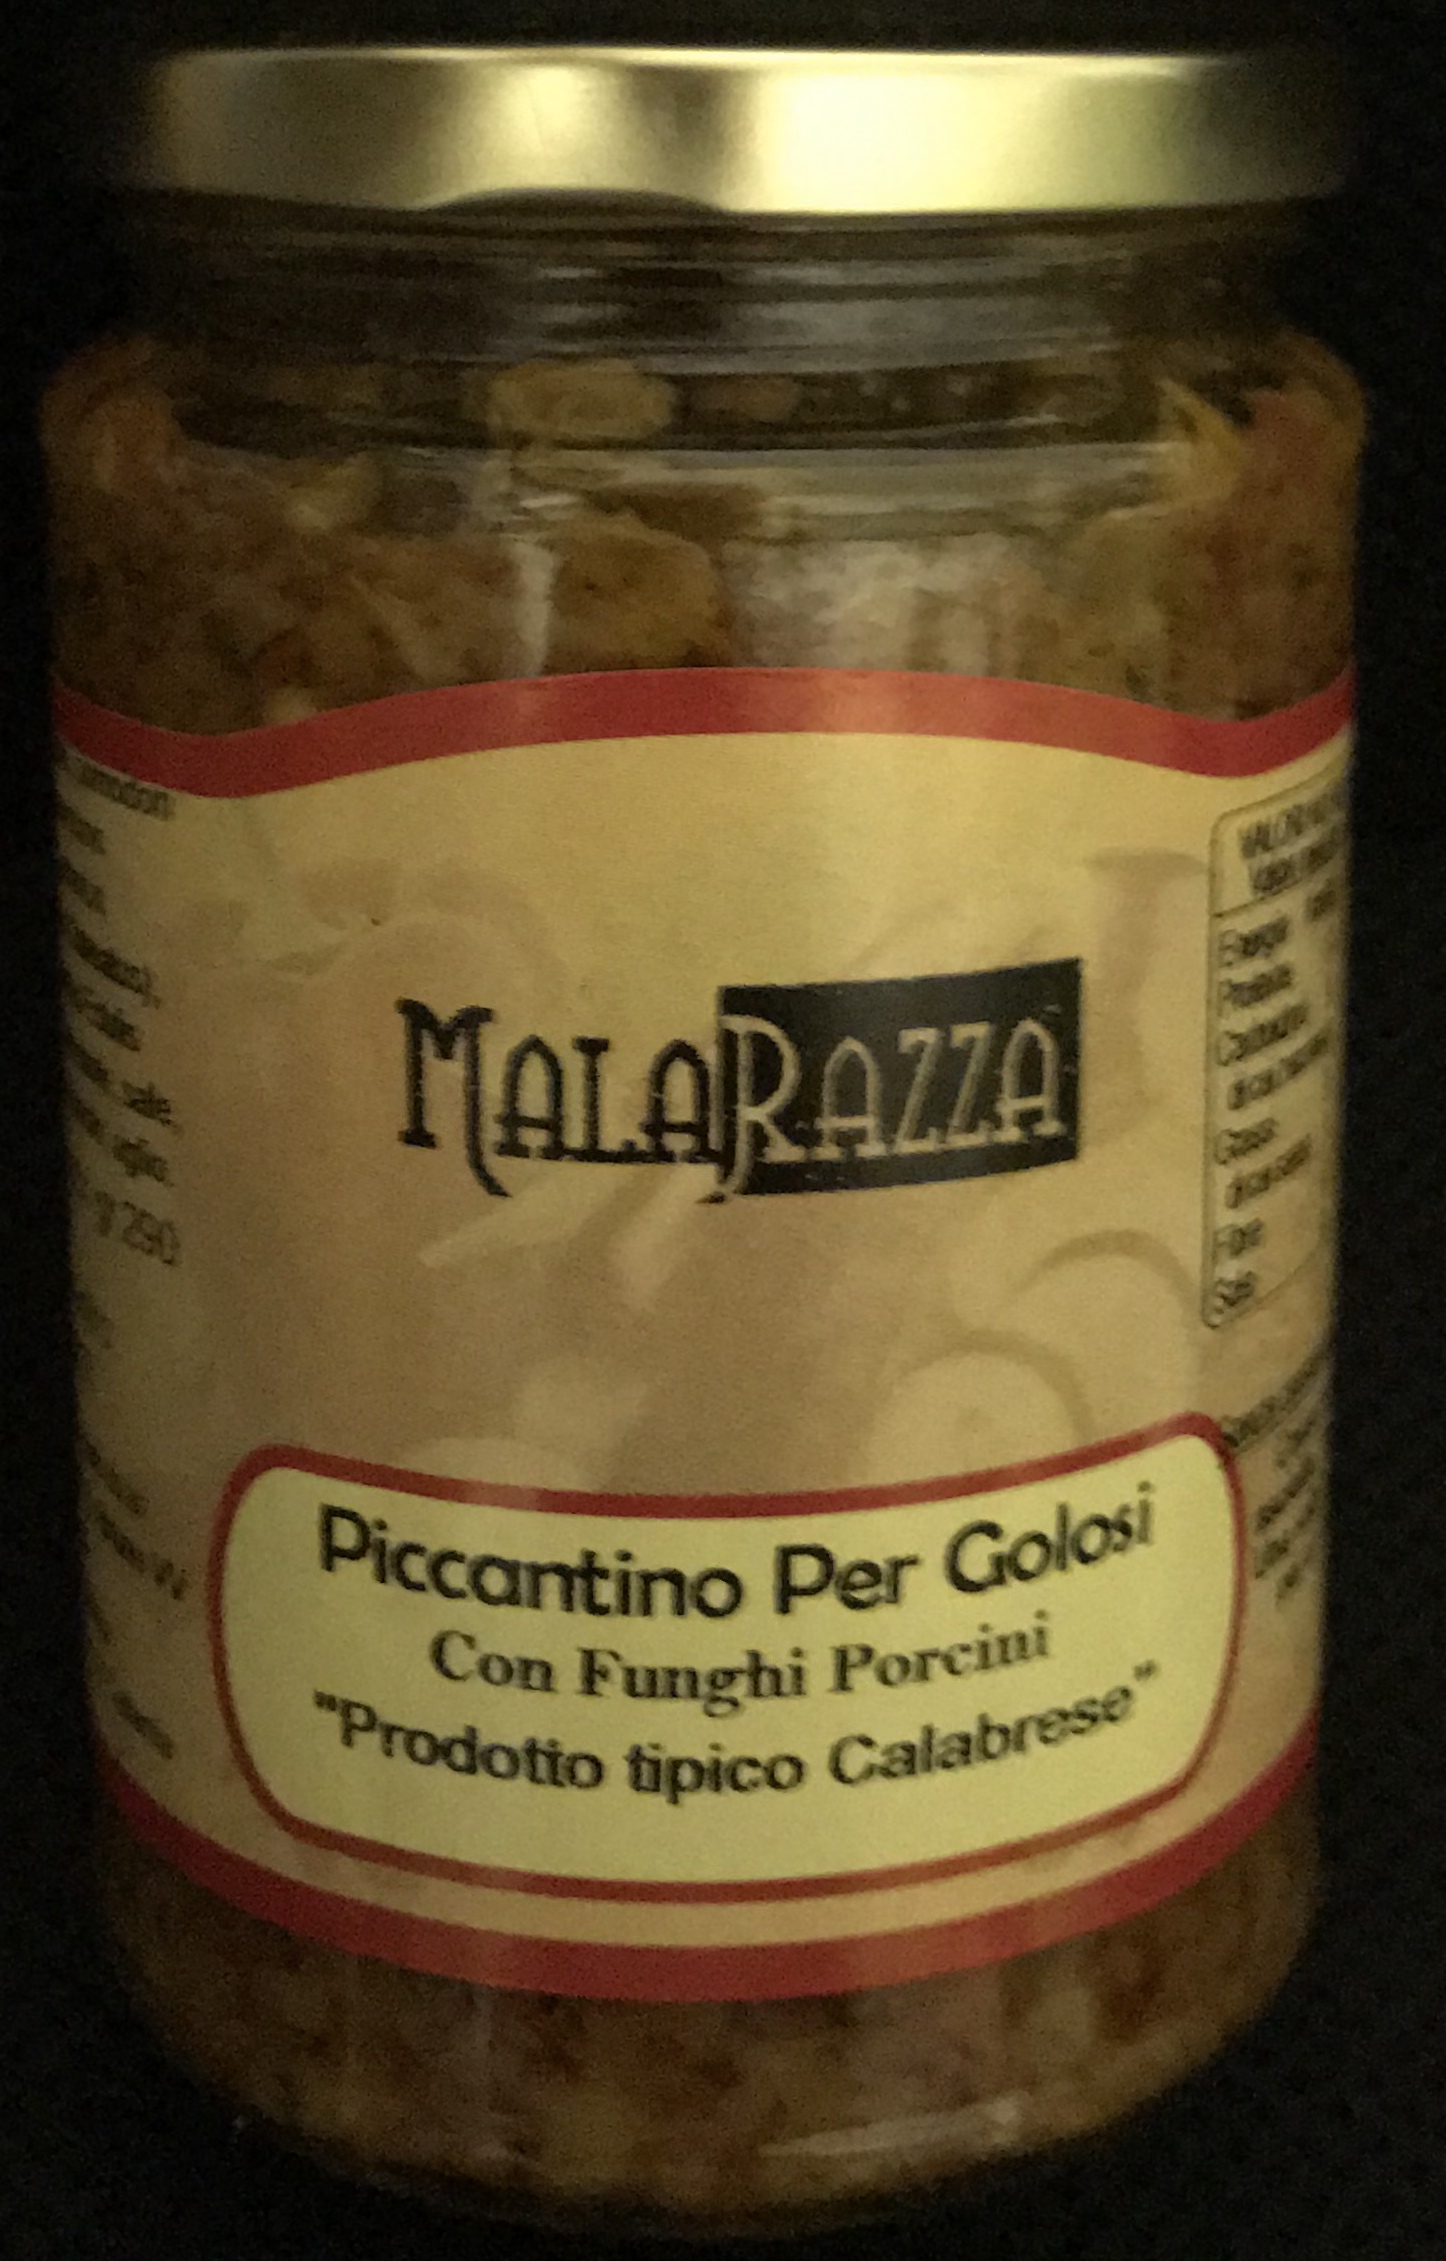 malarazza food made in italy piccantino per golosi